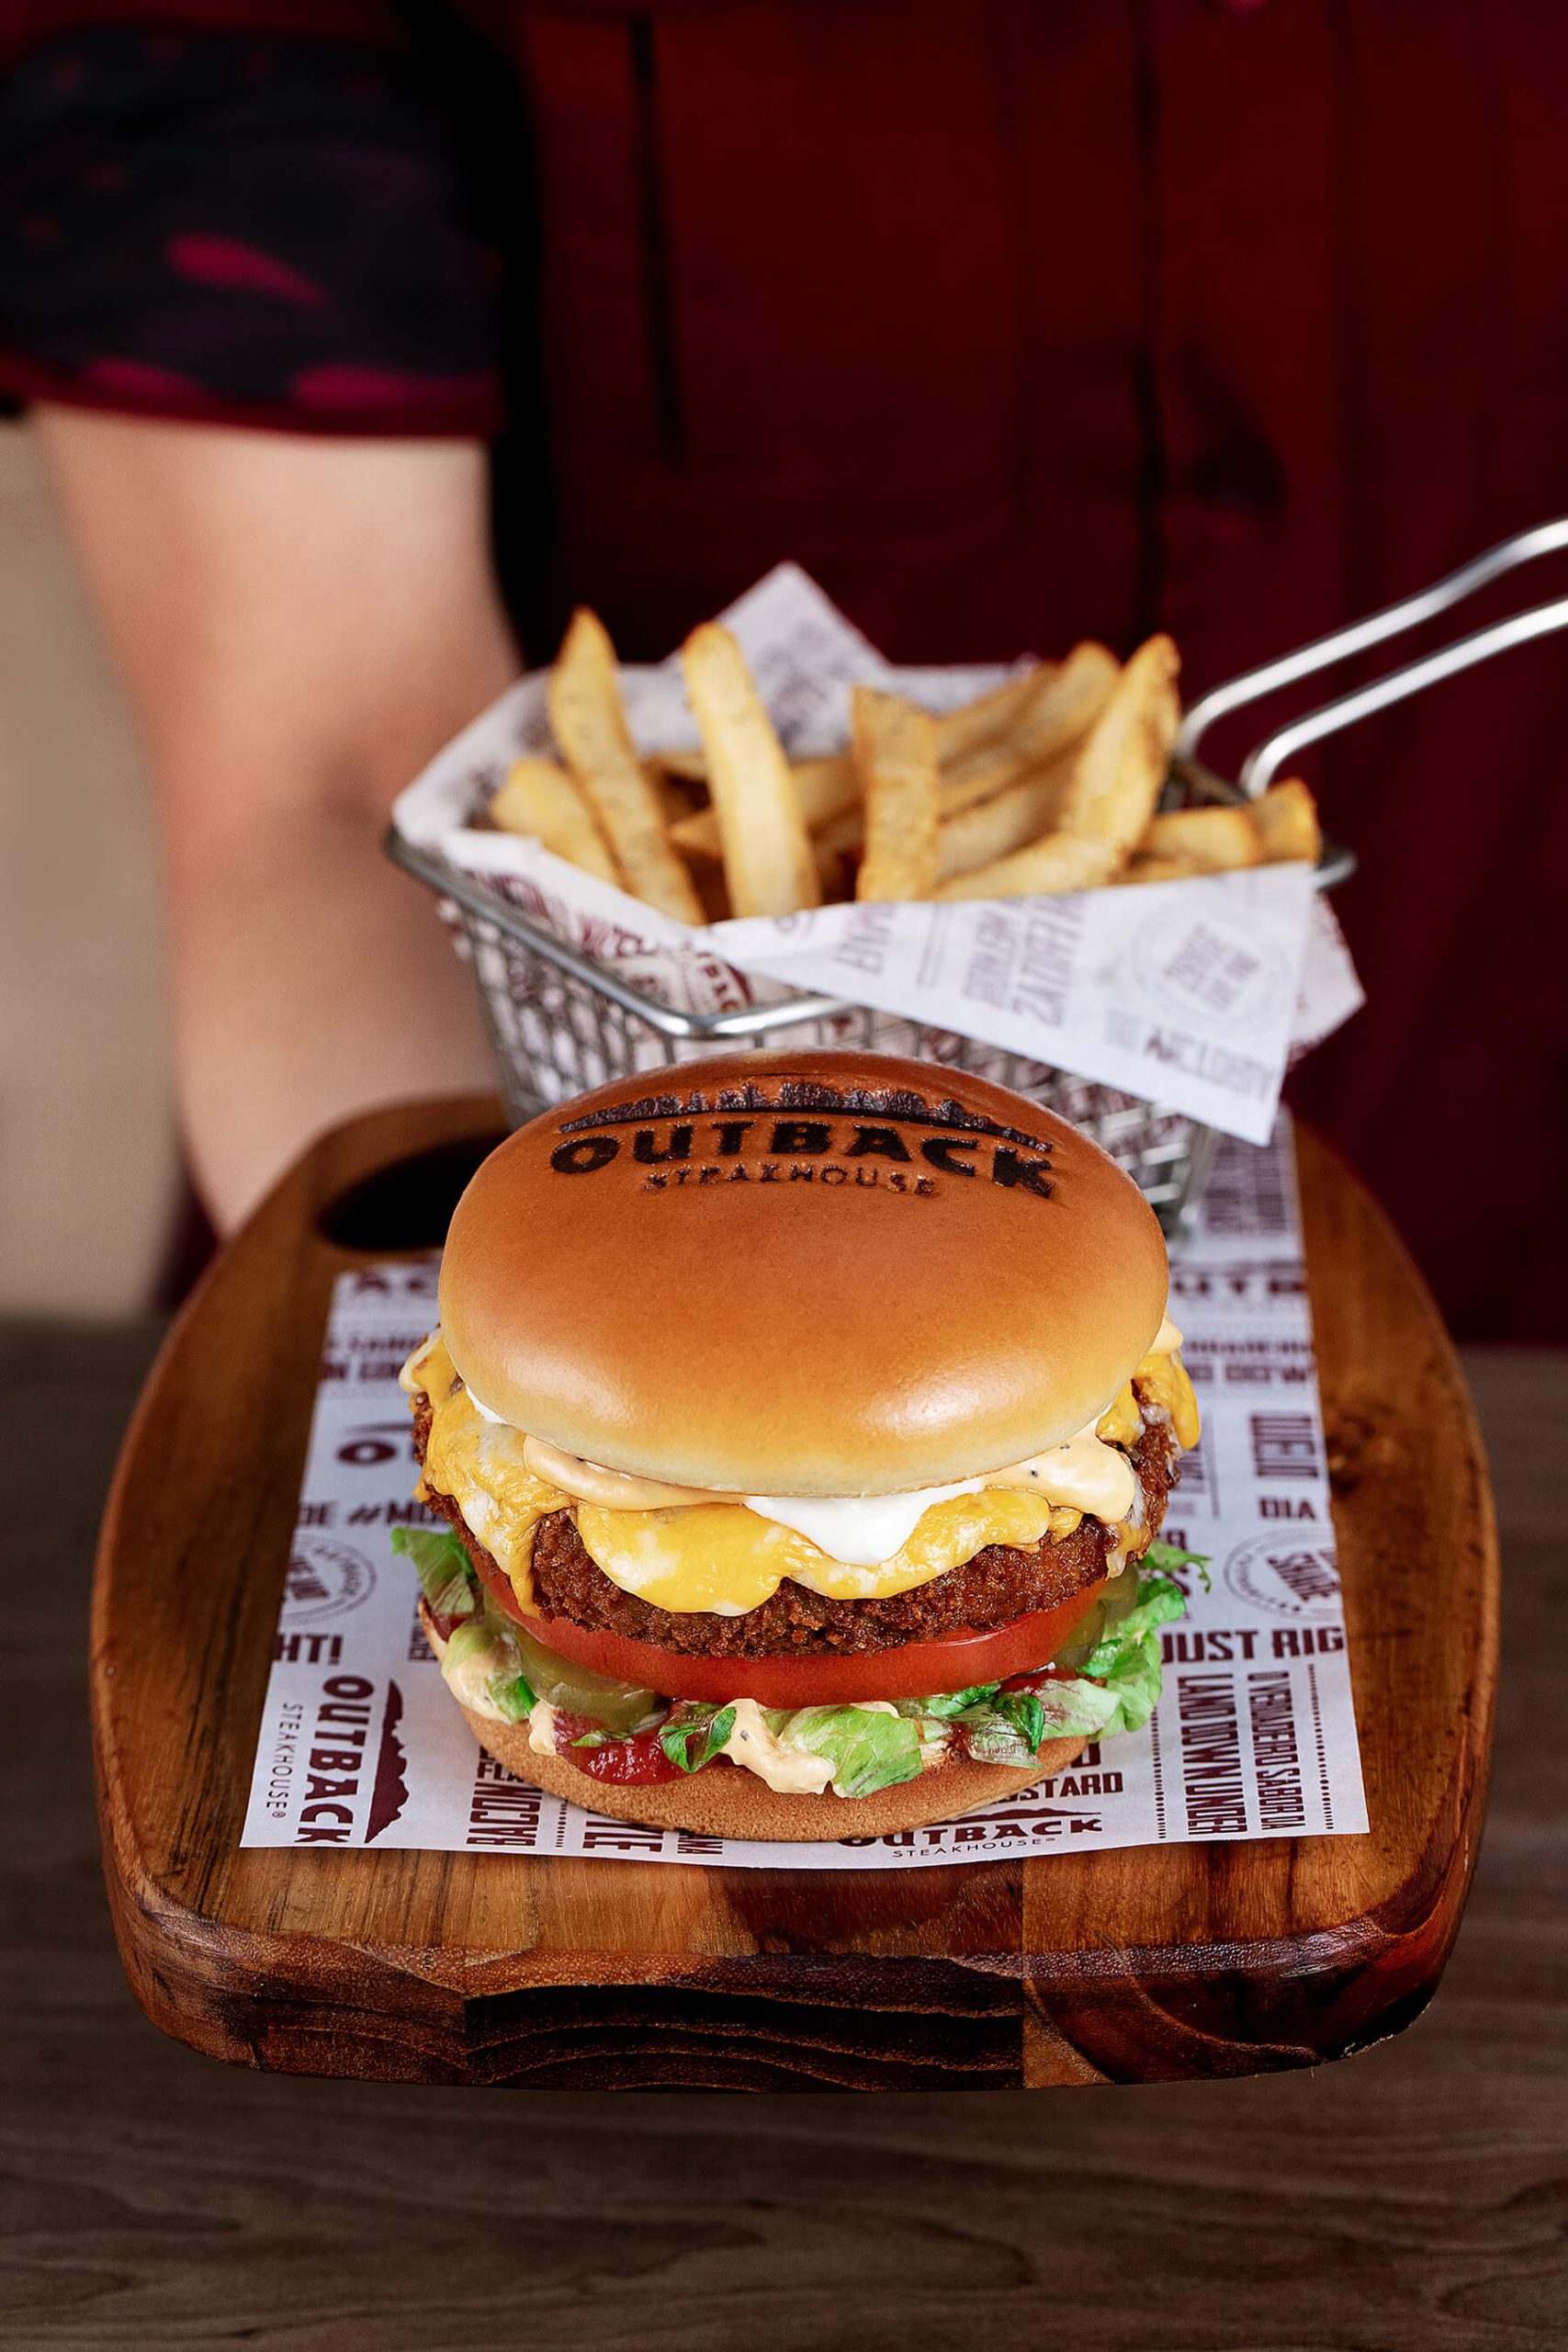 Atendente com uniforme vermelho, servindo um Veggie Burger hambúrguer e batata frita.